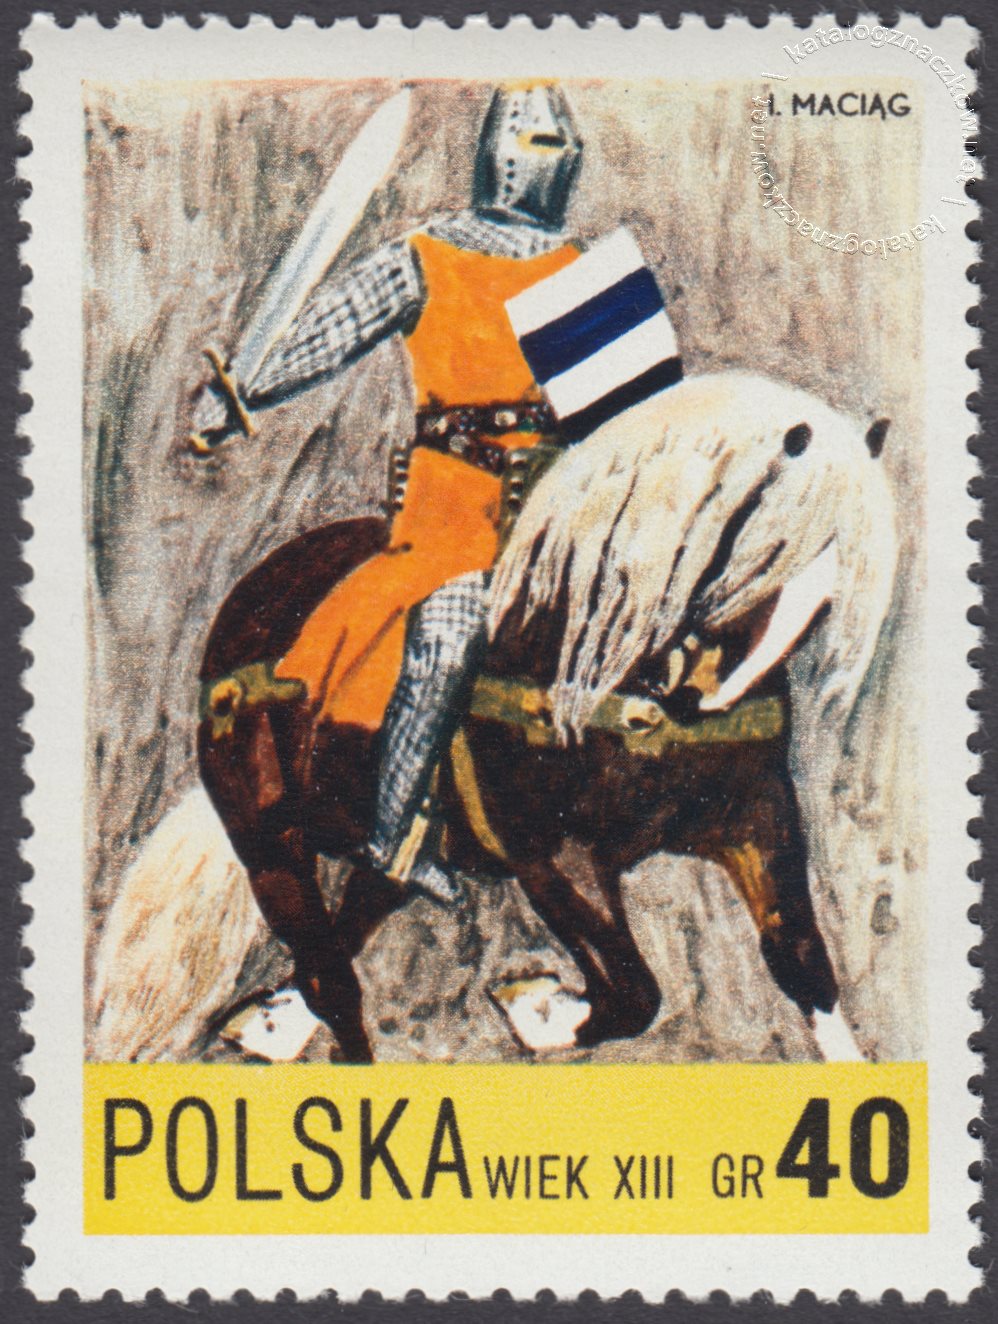 Века 1972. Почтовые марки Польши. Почтовые марки Рыцари. Марочные Рыцари. Почтовые марки Бельгии с рыцарем.